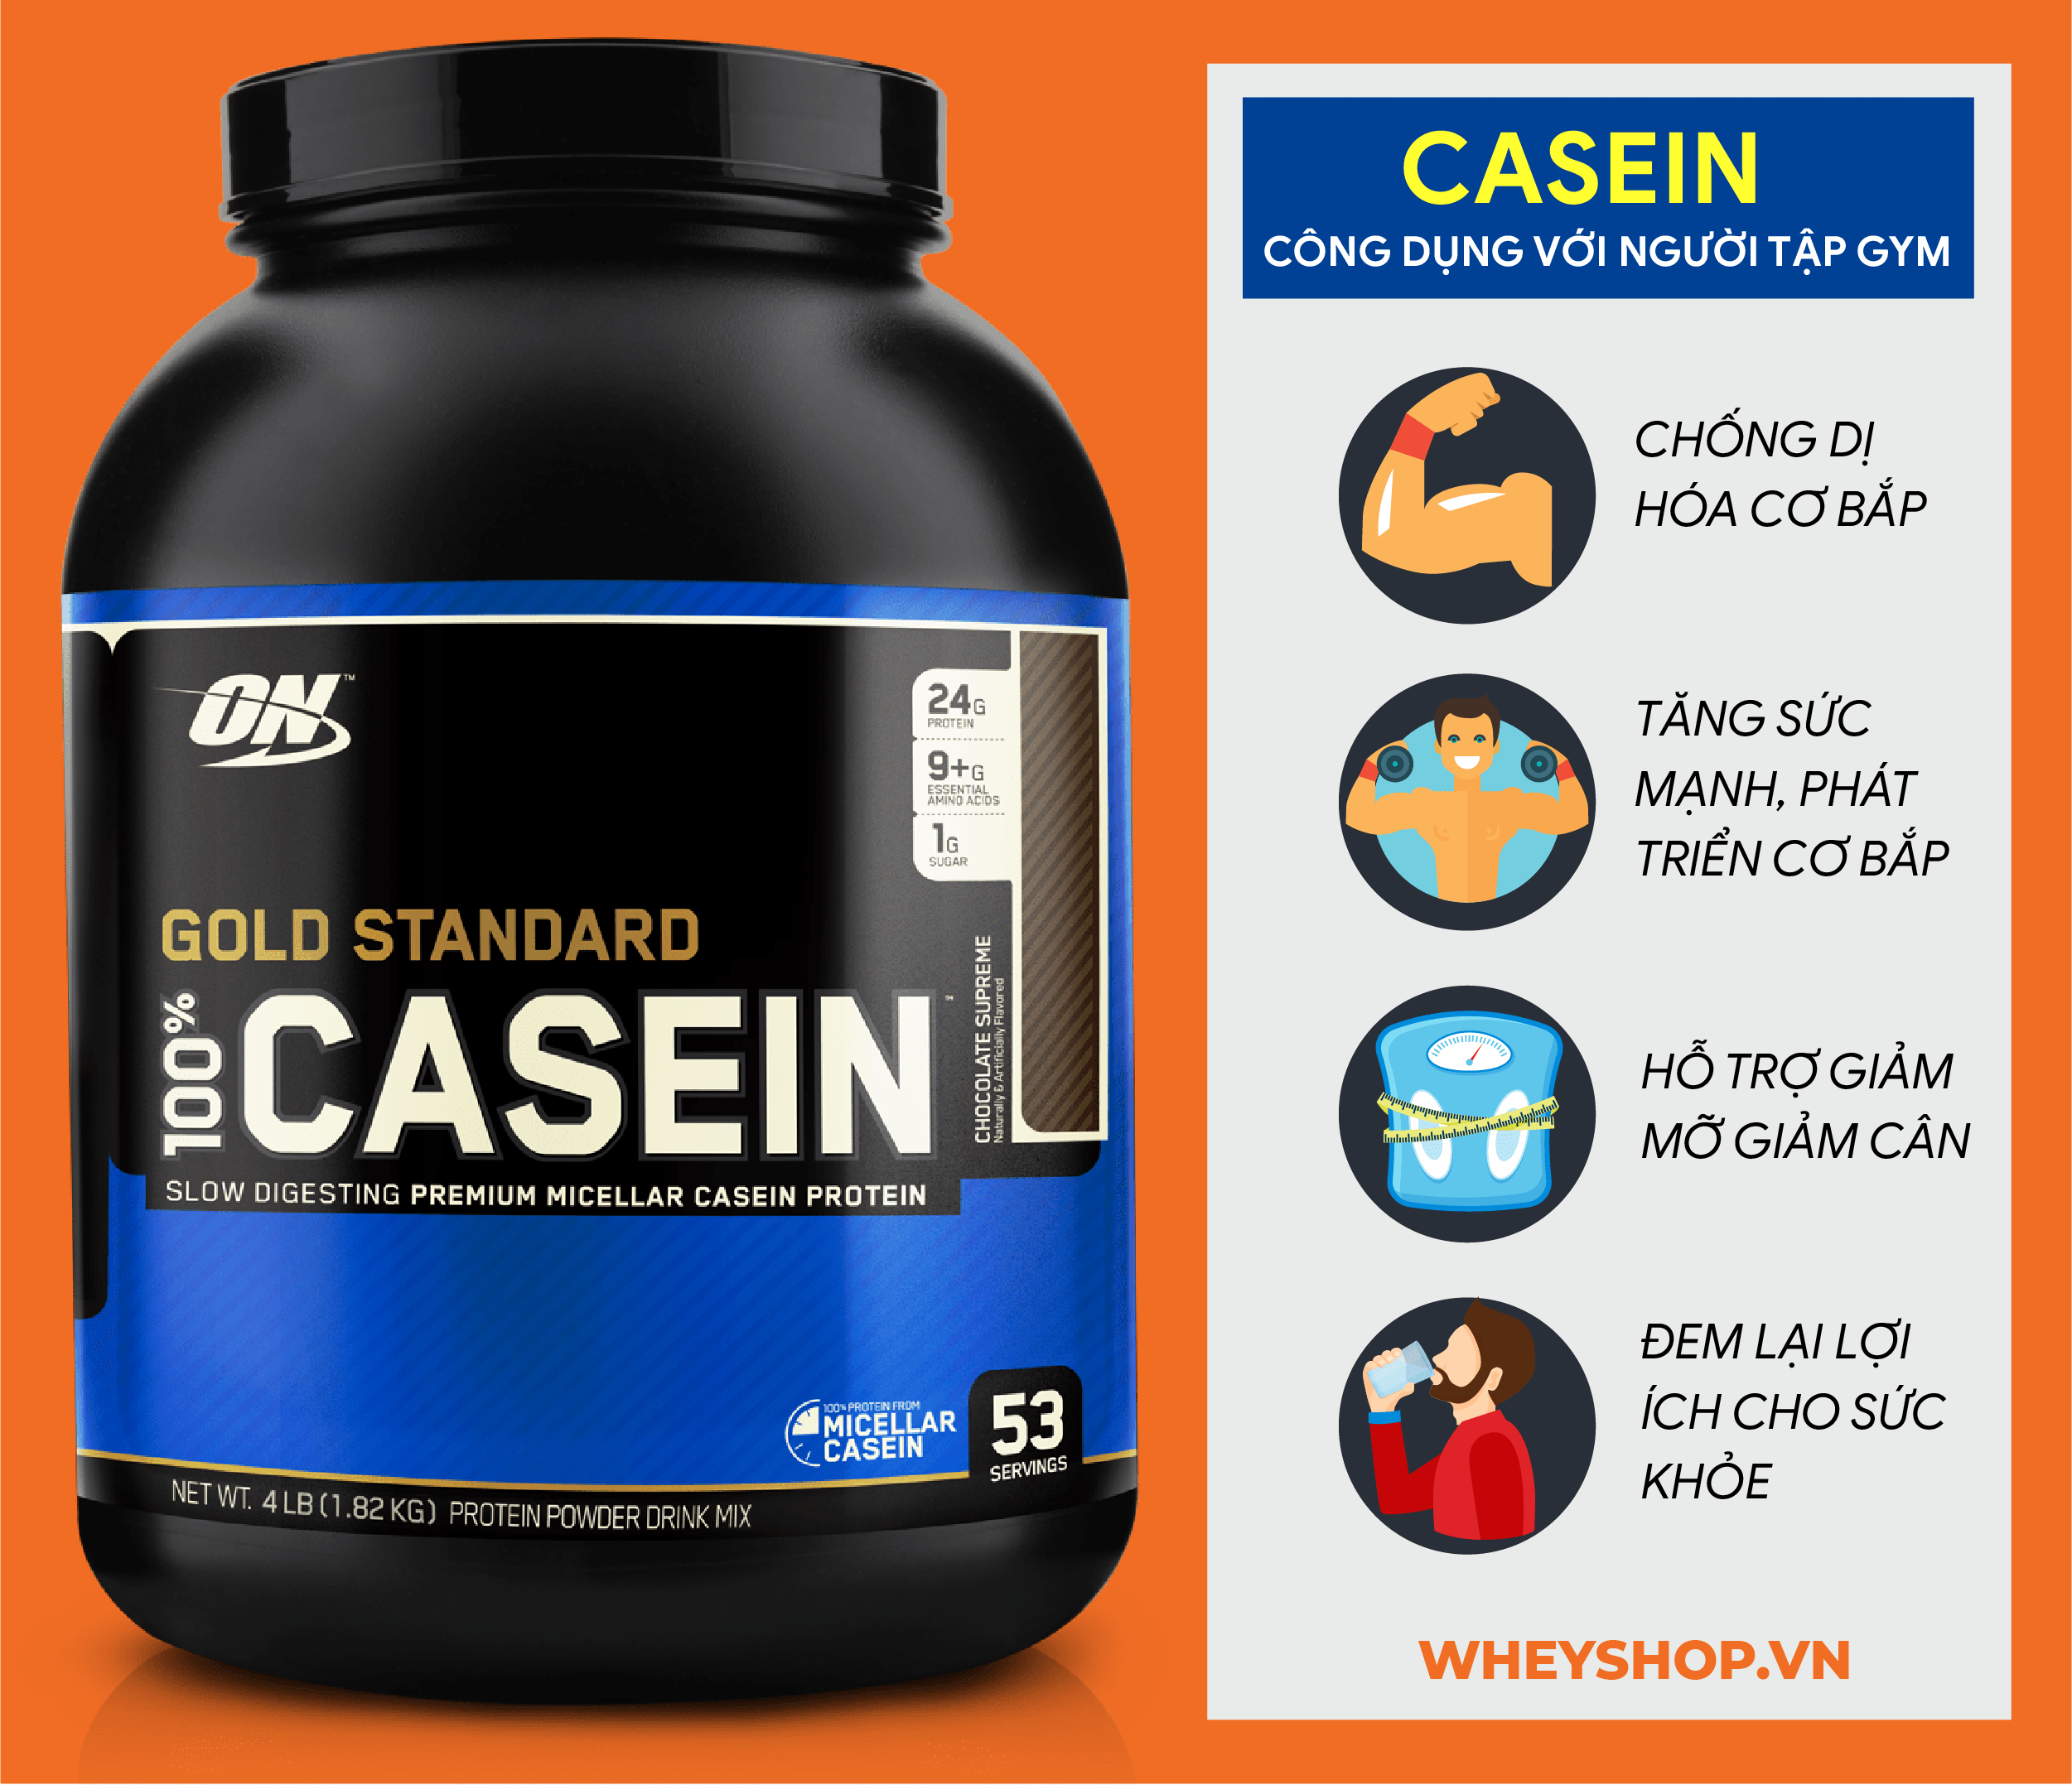 Casein là gì? Vai trò của Casein đối với việc phục hồi và phát triển cơ bắp? Tập gym có cần thiết bổ sung Casein hay không? Tác dụng phụ cần biết khi dùng Casein